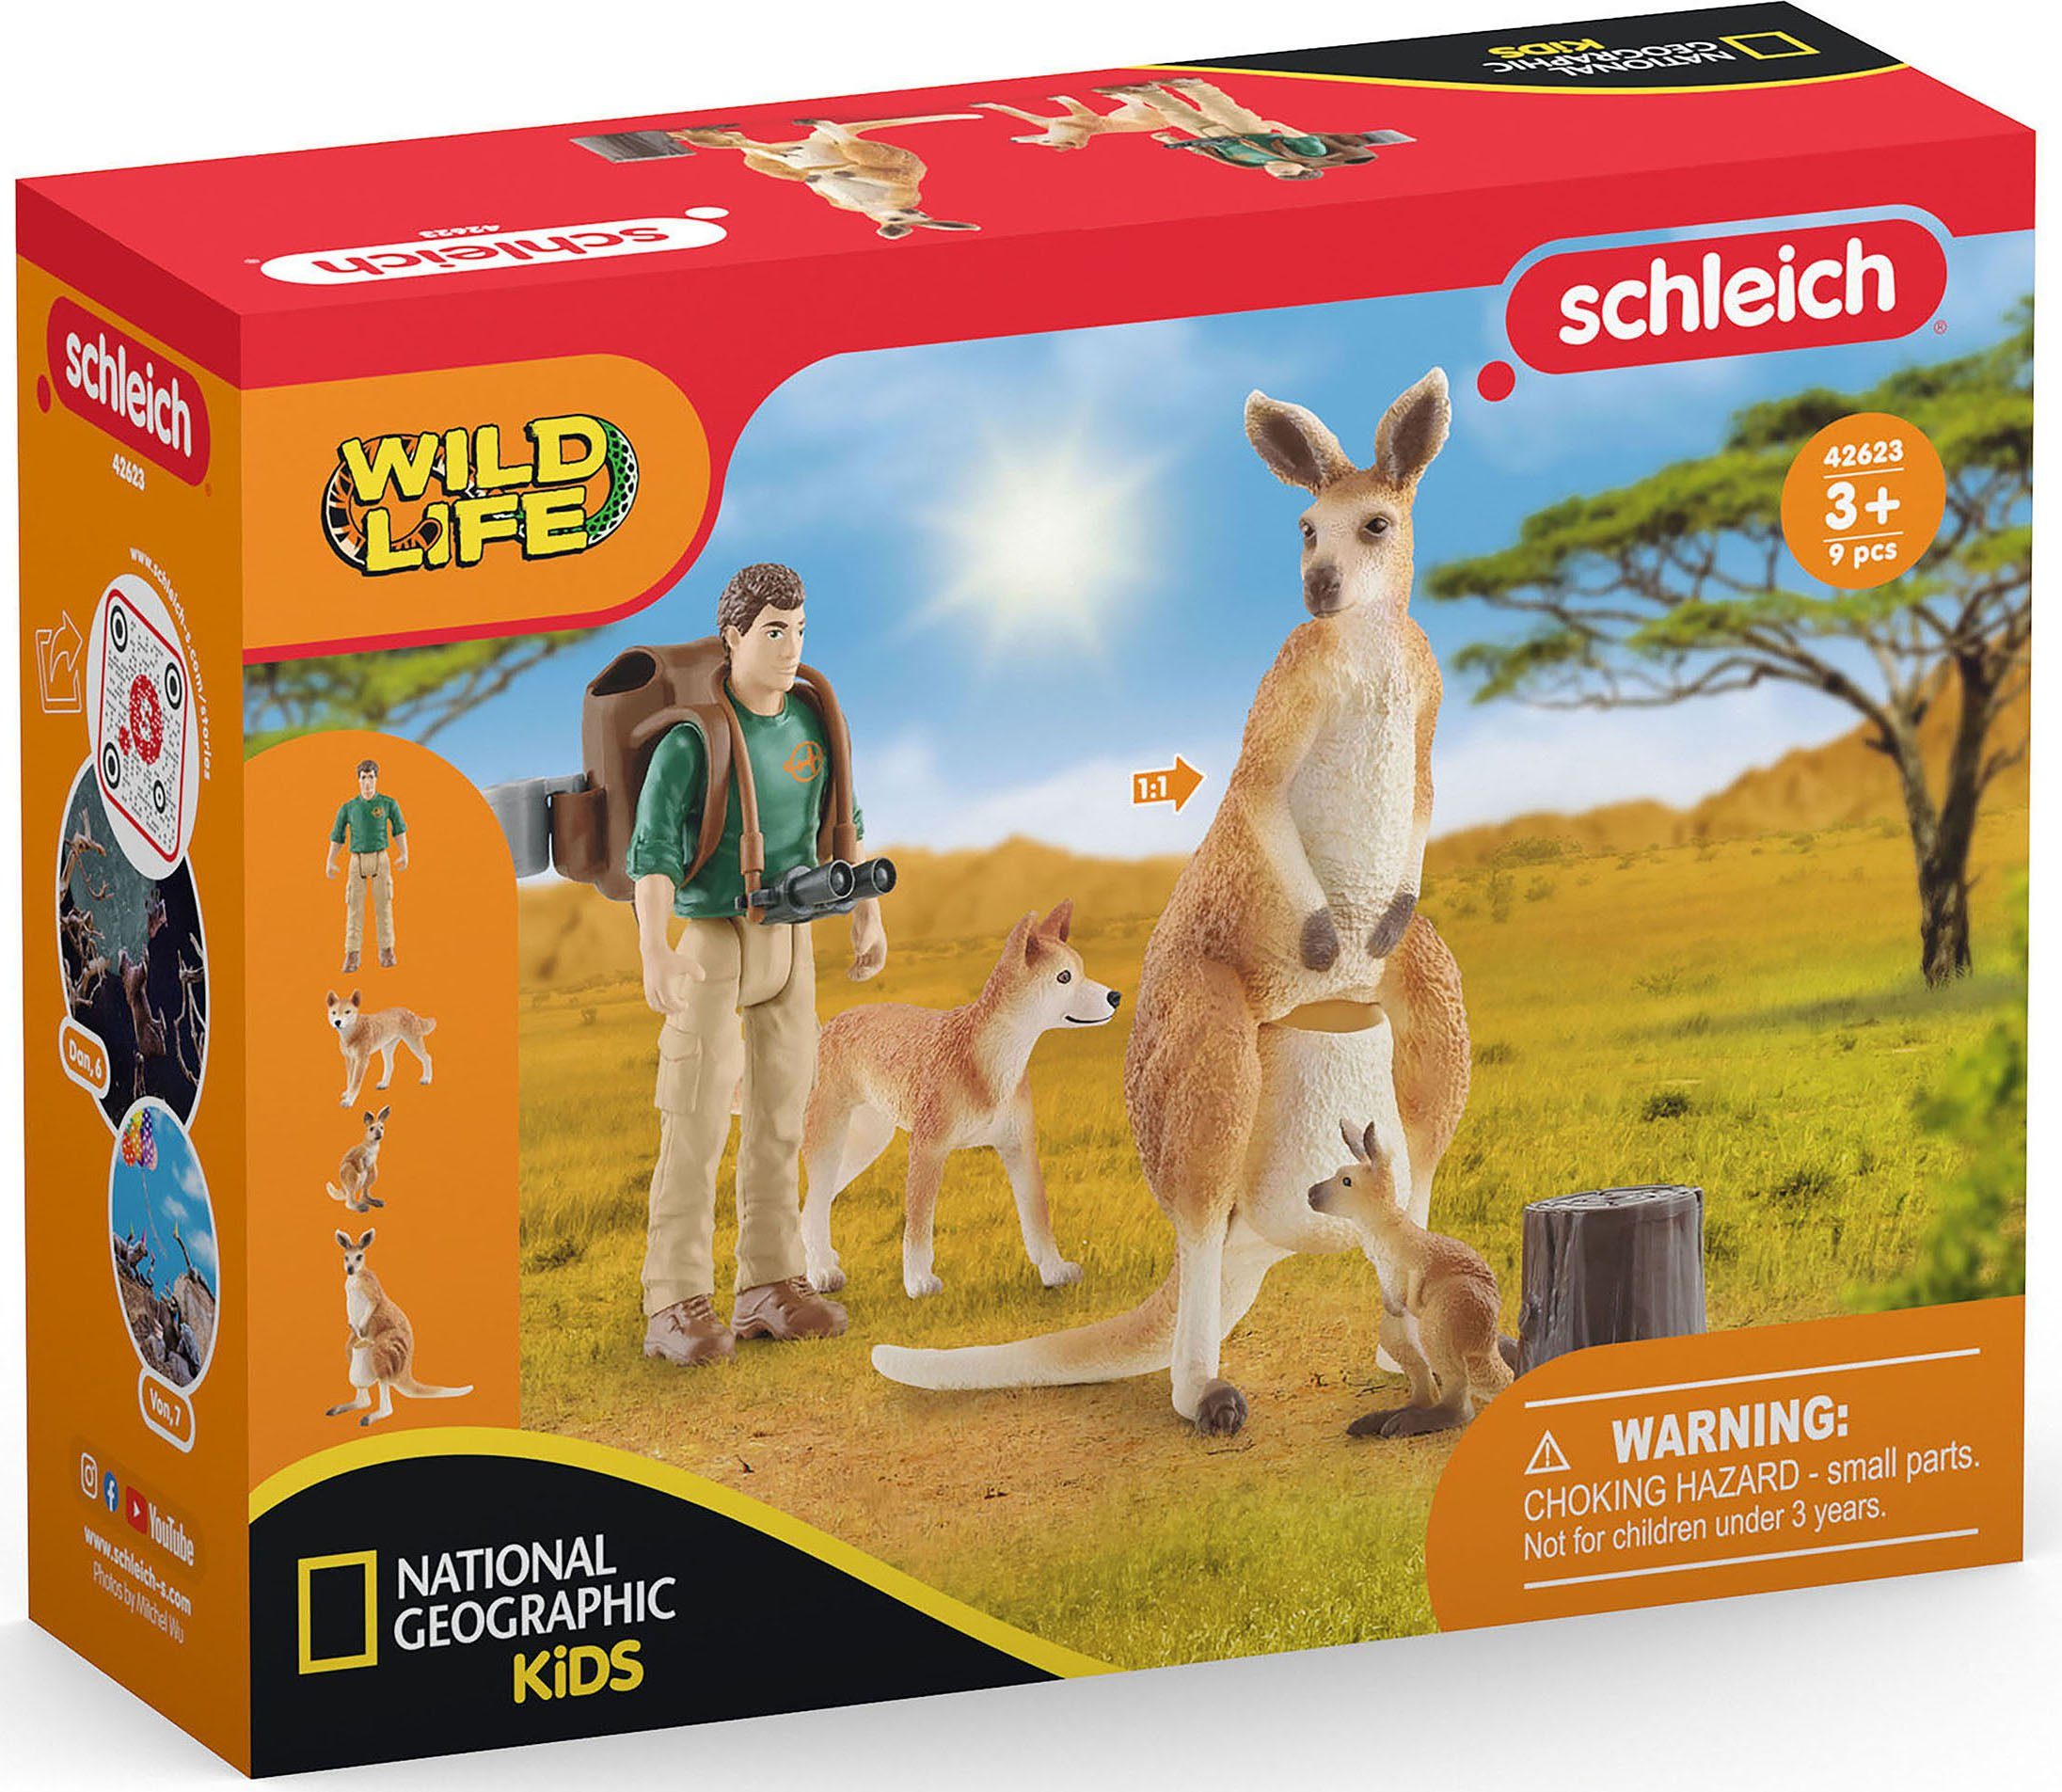 Schleich® Outback Spielfigur LIFE, Abenteuer (42623) WILD